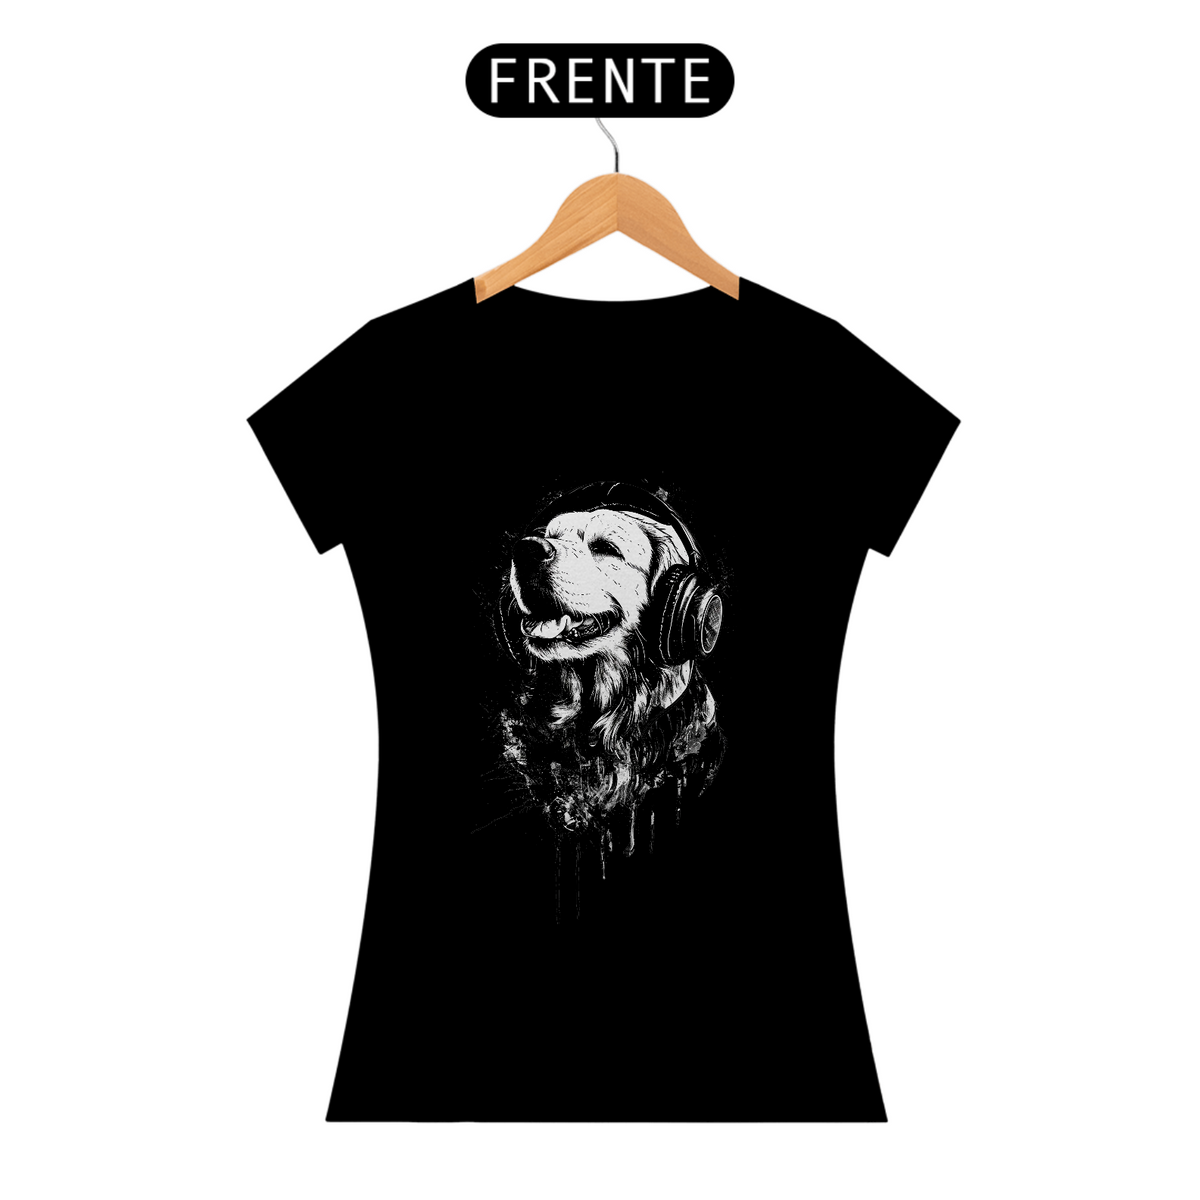 Nome do produto: Camiseta Cachorro Artística